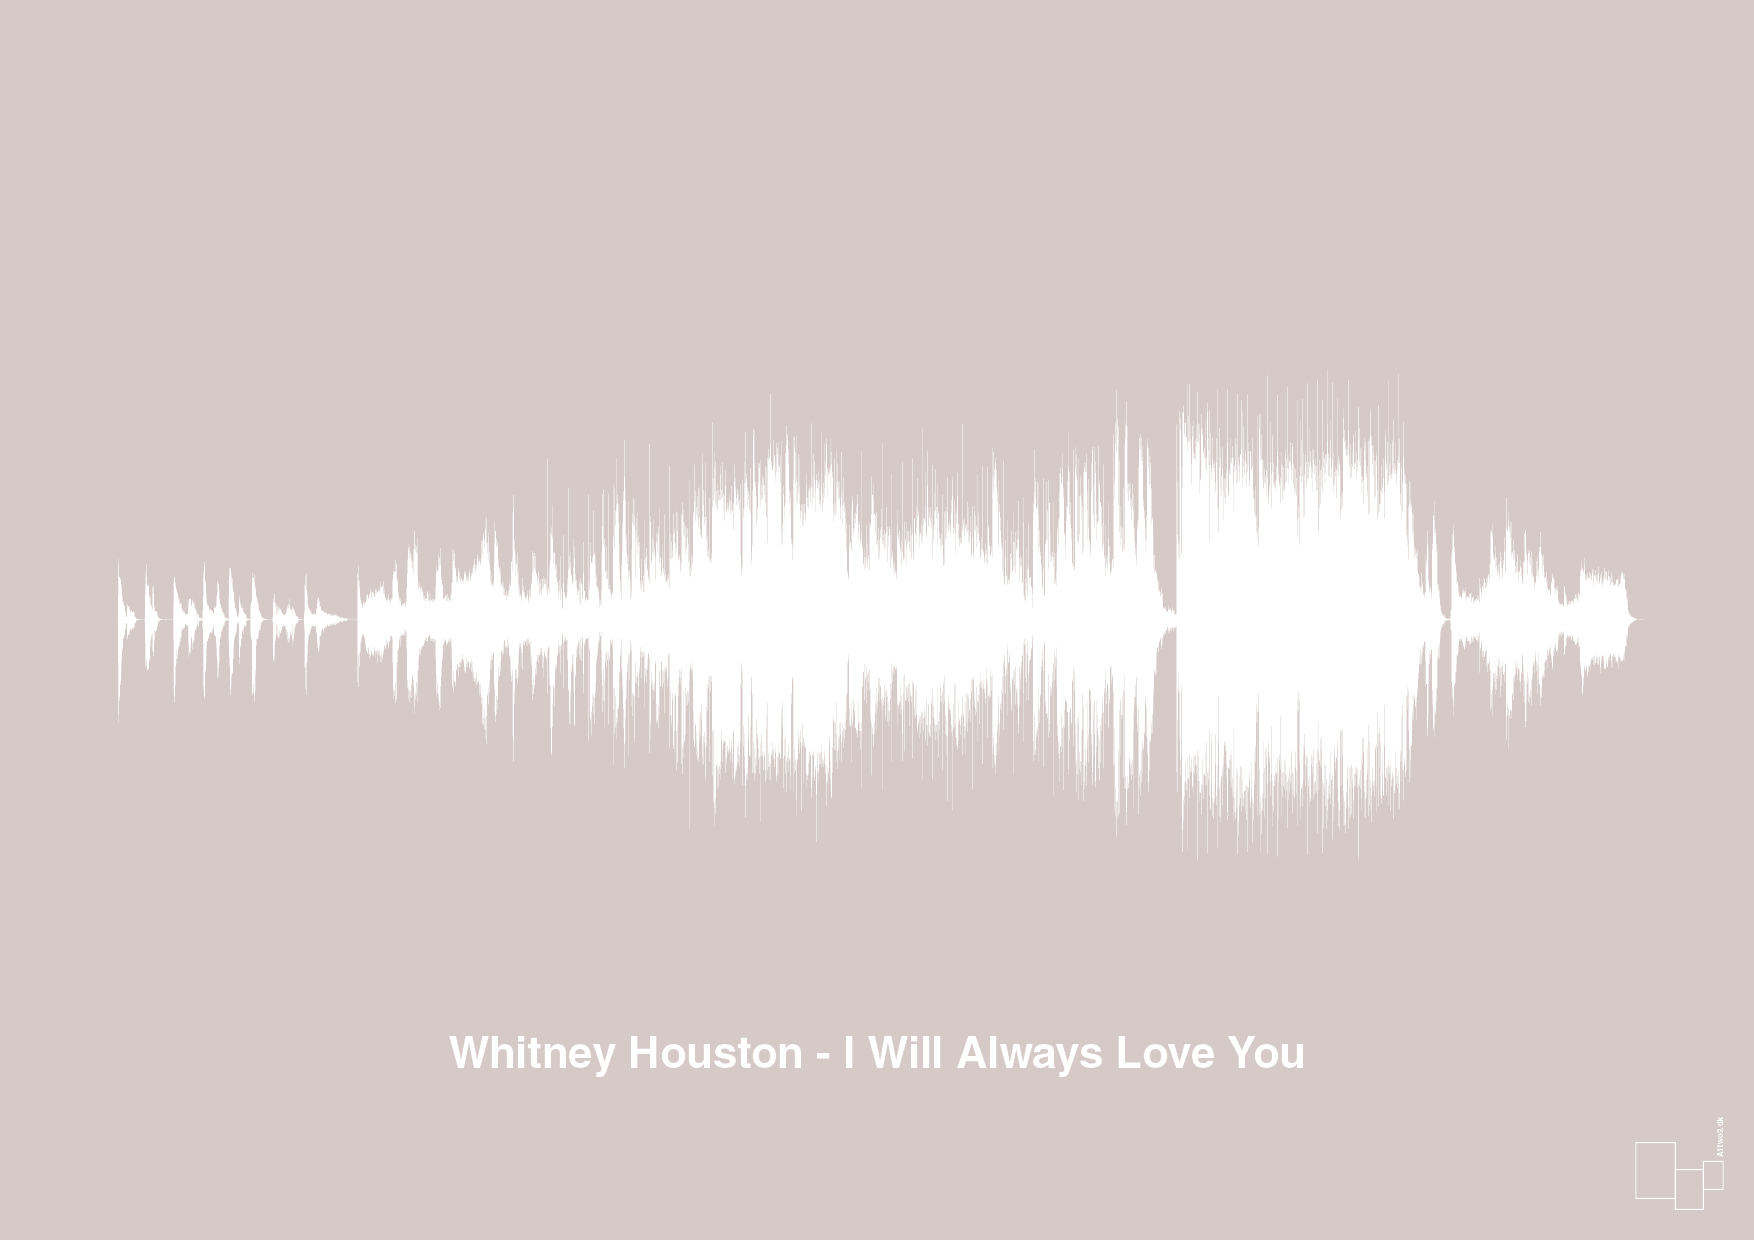 whitney houston - i will always love you - Plakat med Musik i Broken Beige